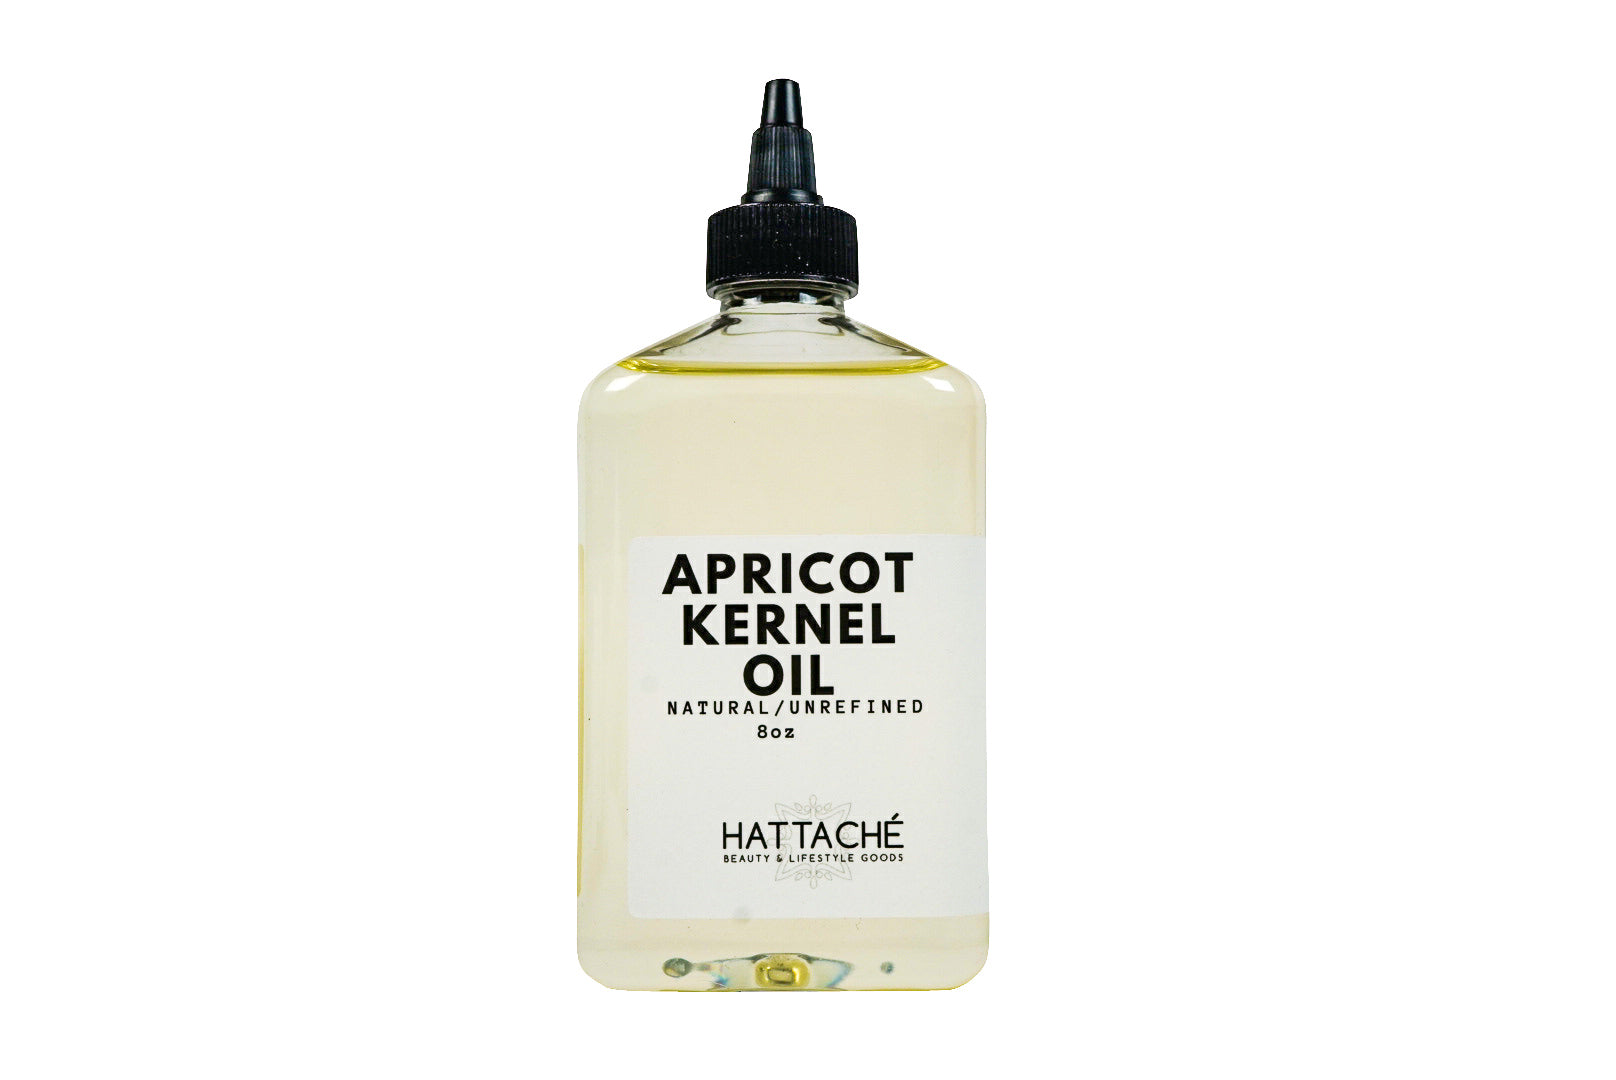 Hattache - Apricot Kernel Oil (Unrefined) – Hattaché Beauty & Lifestyle  Goods